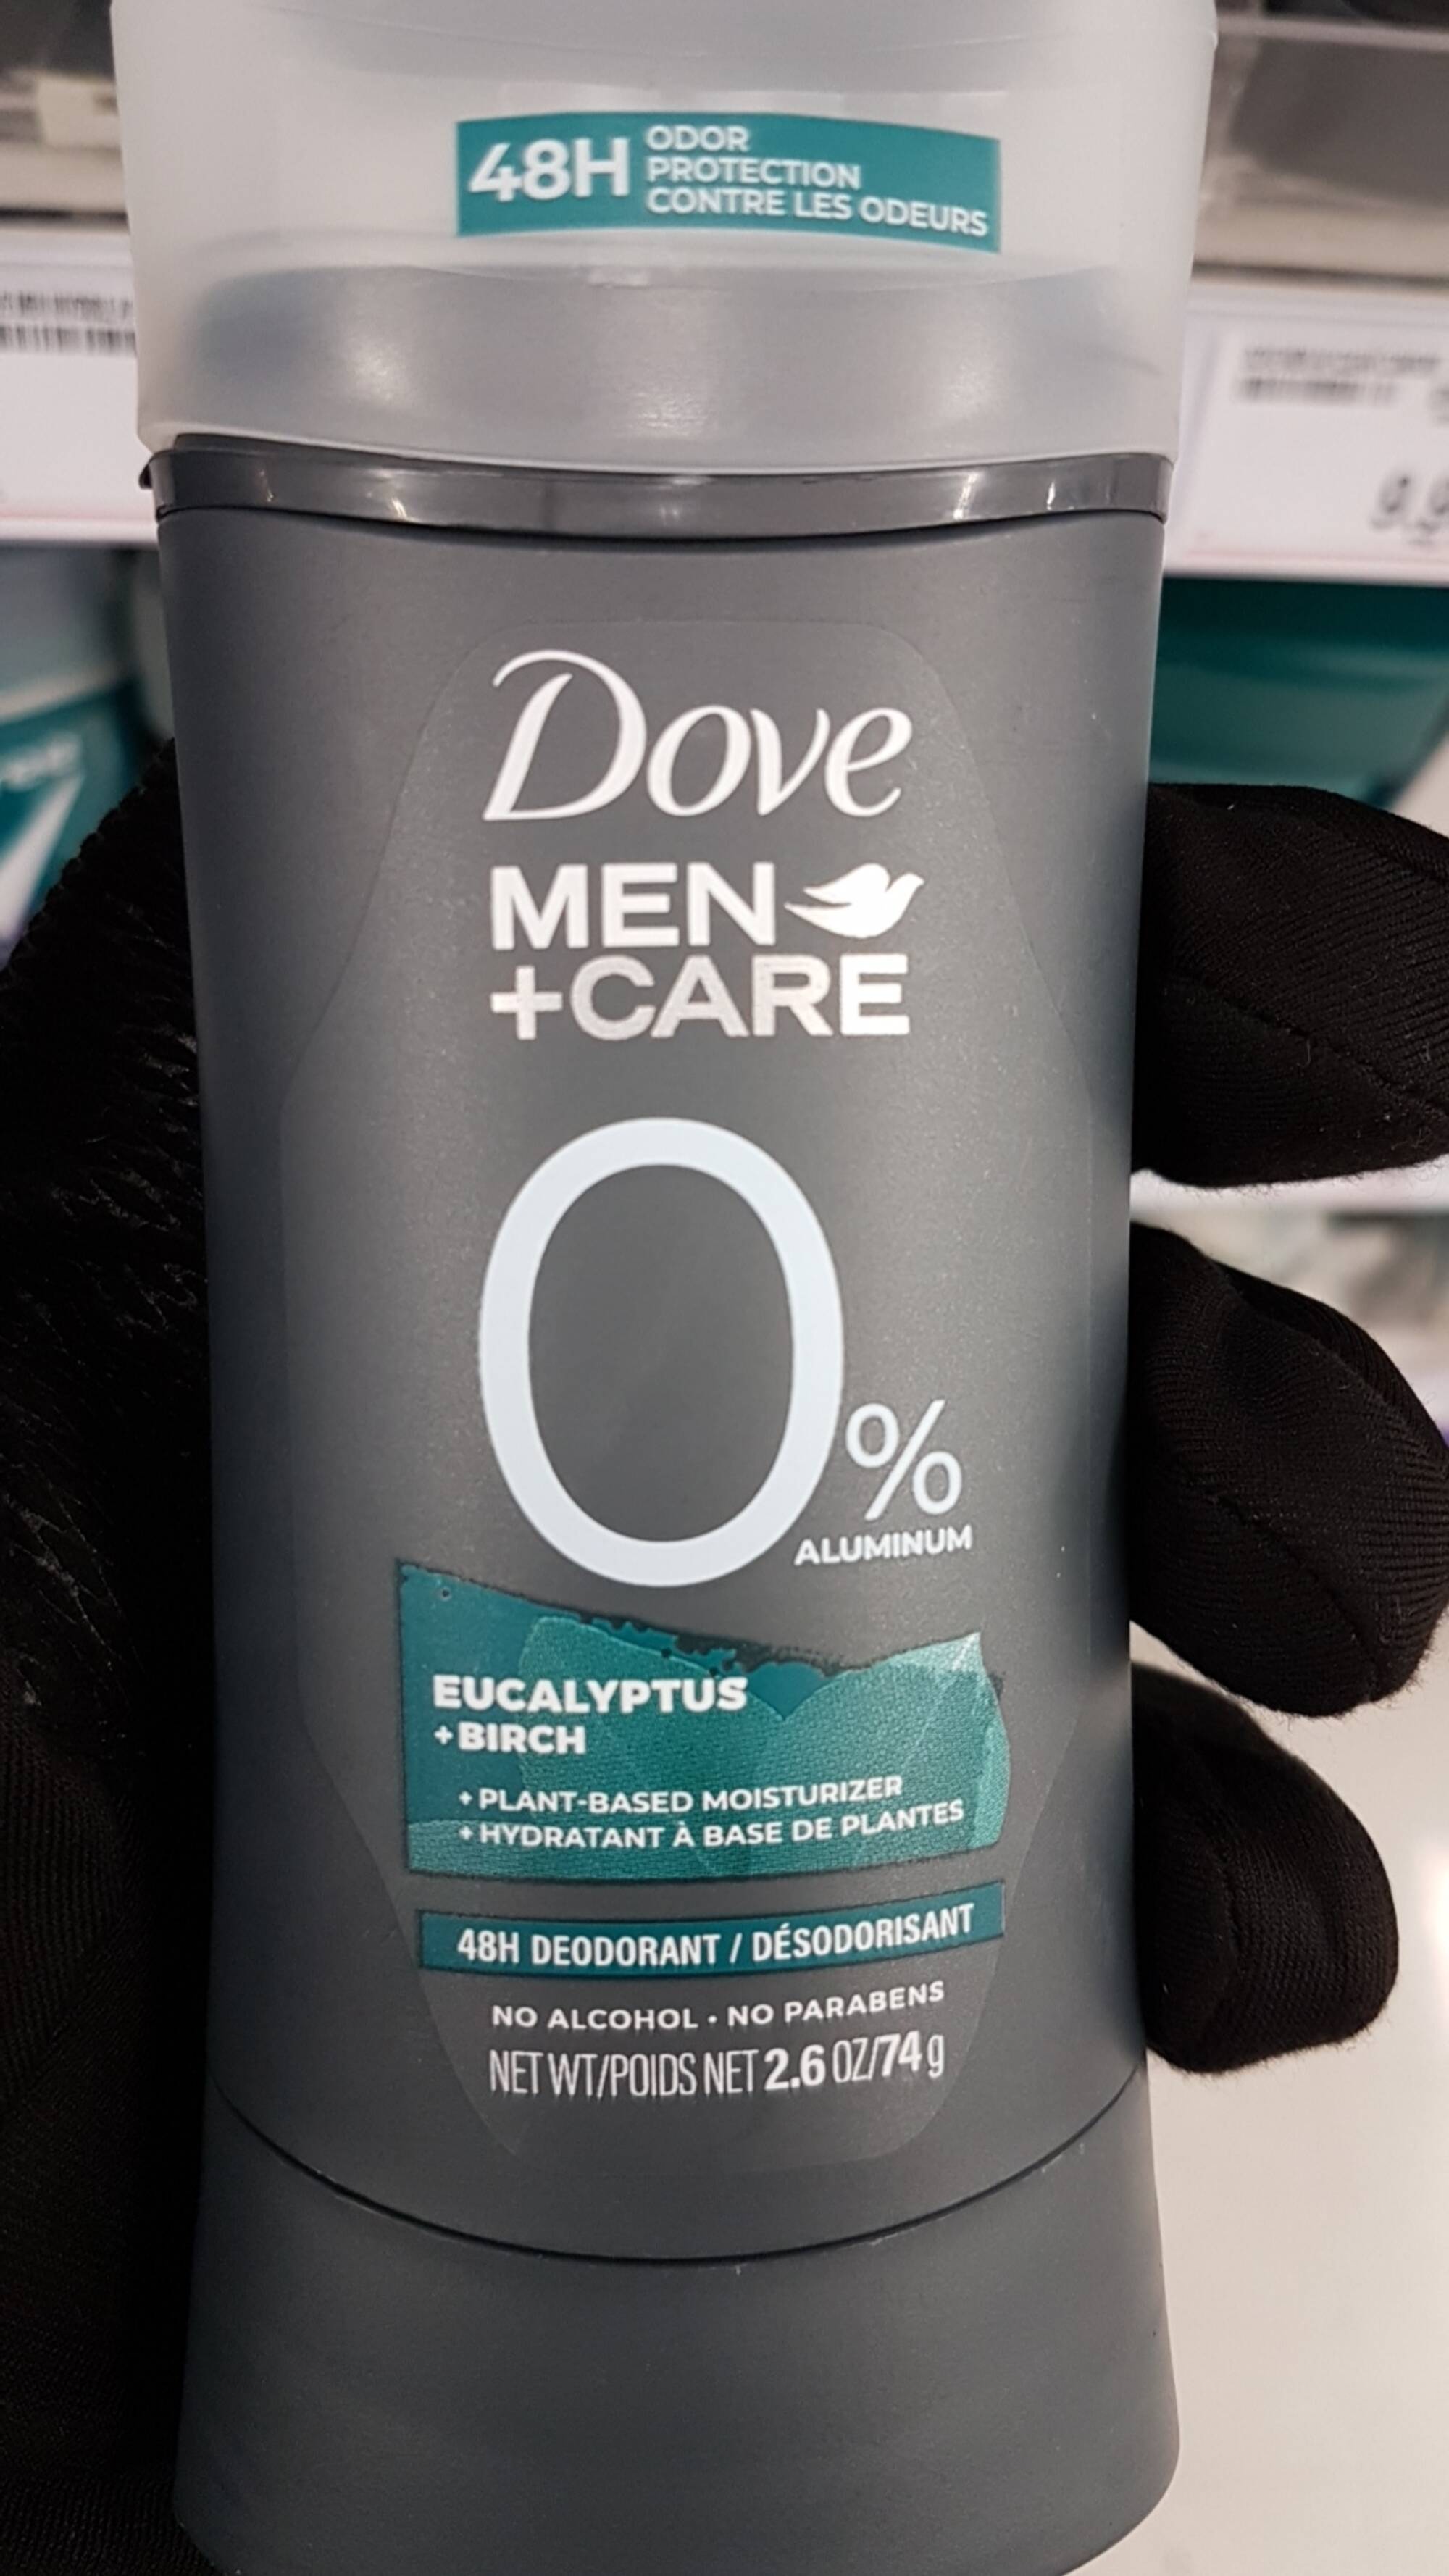 DOVE - Men + care - 48h deodorant